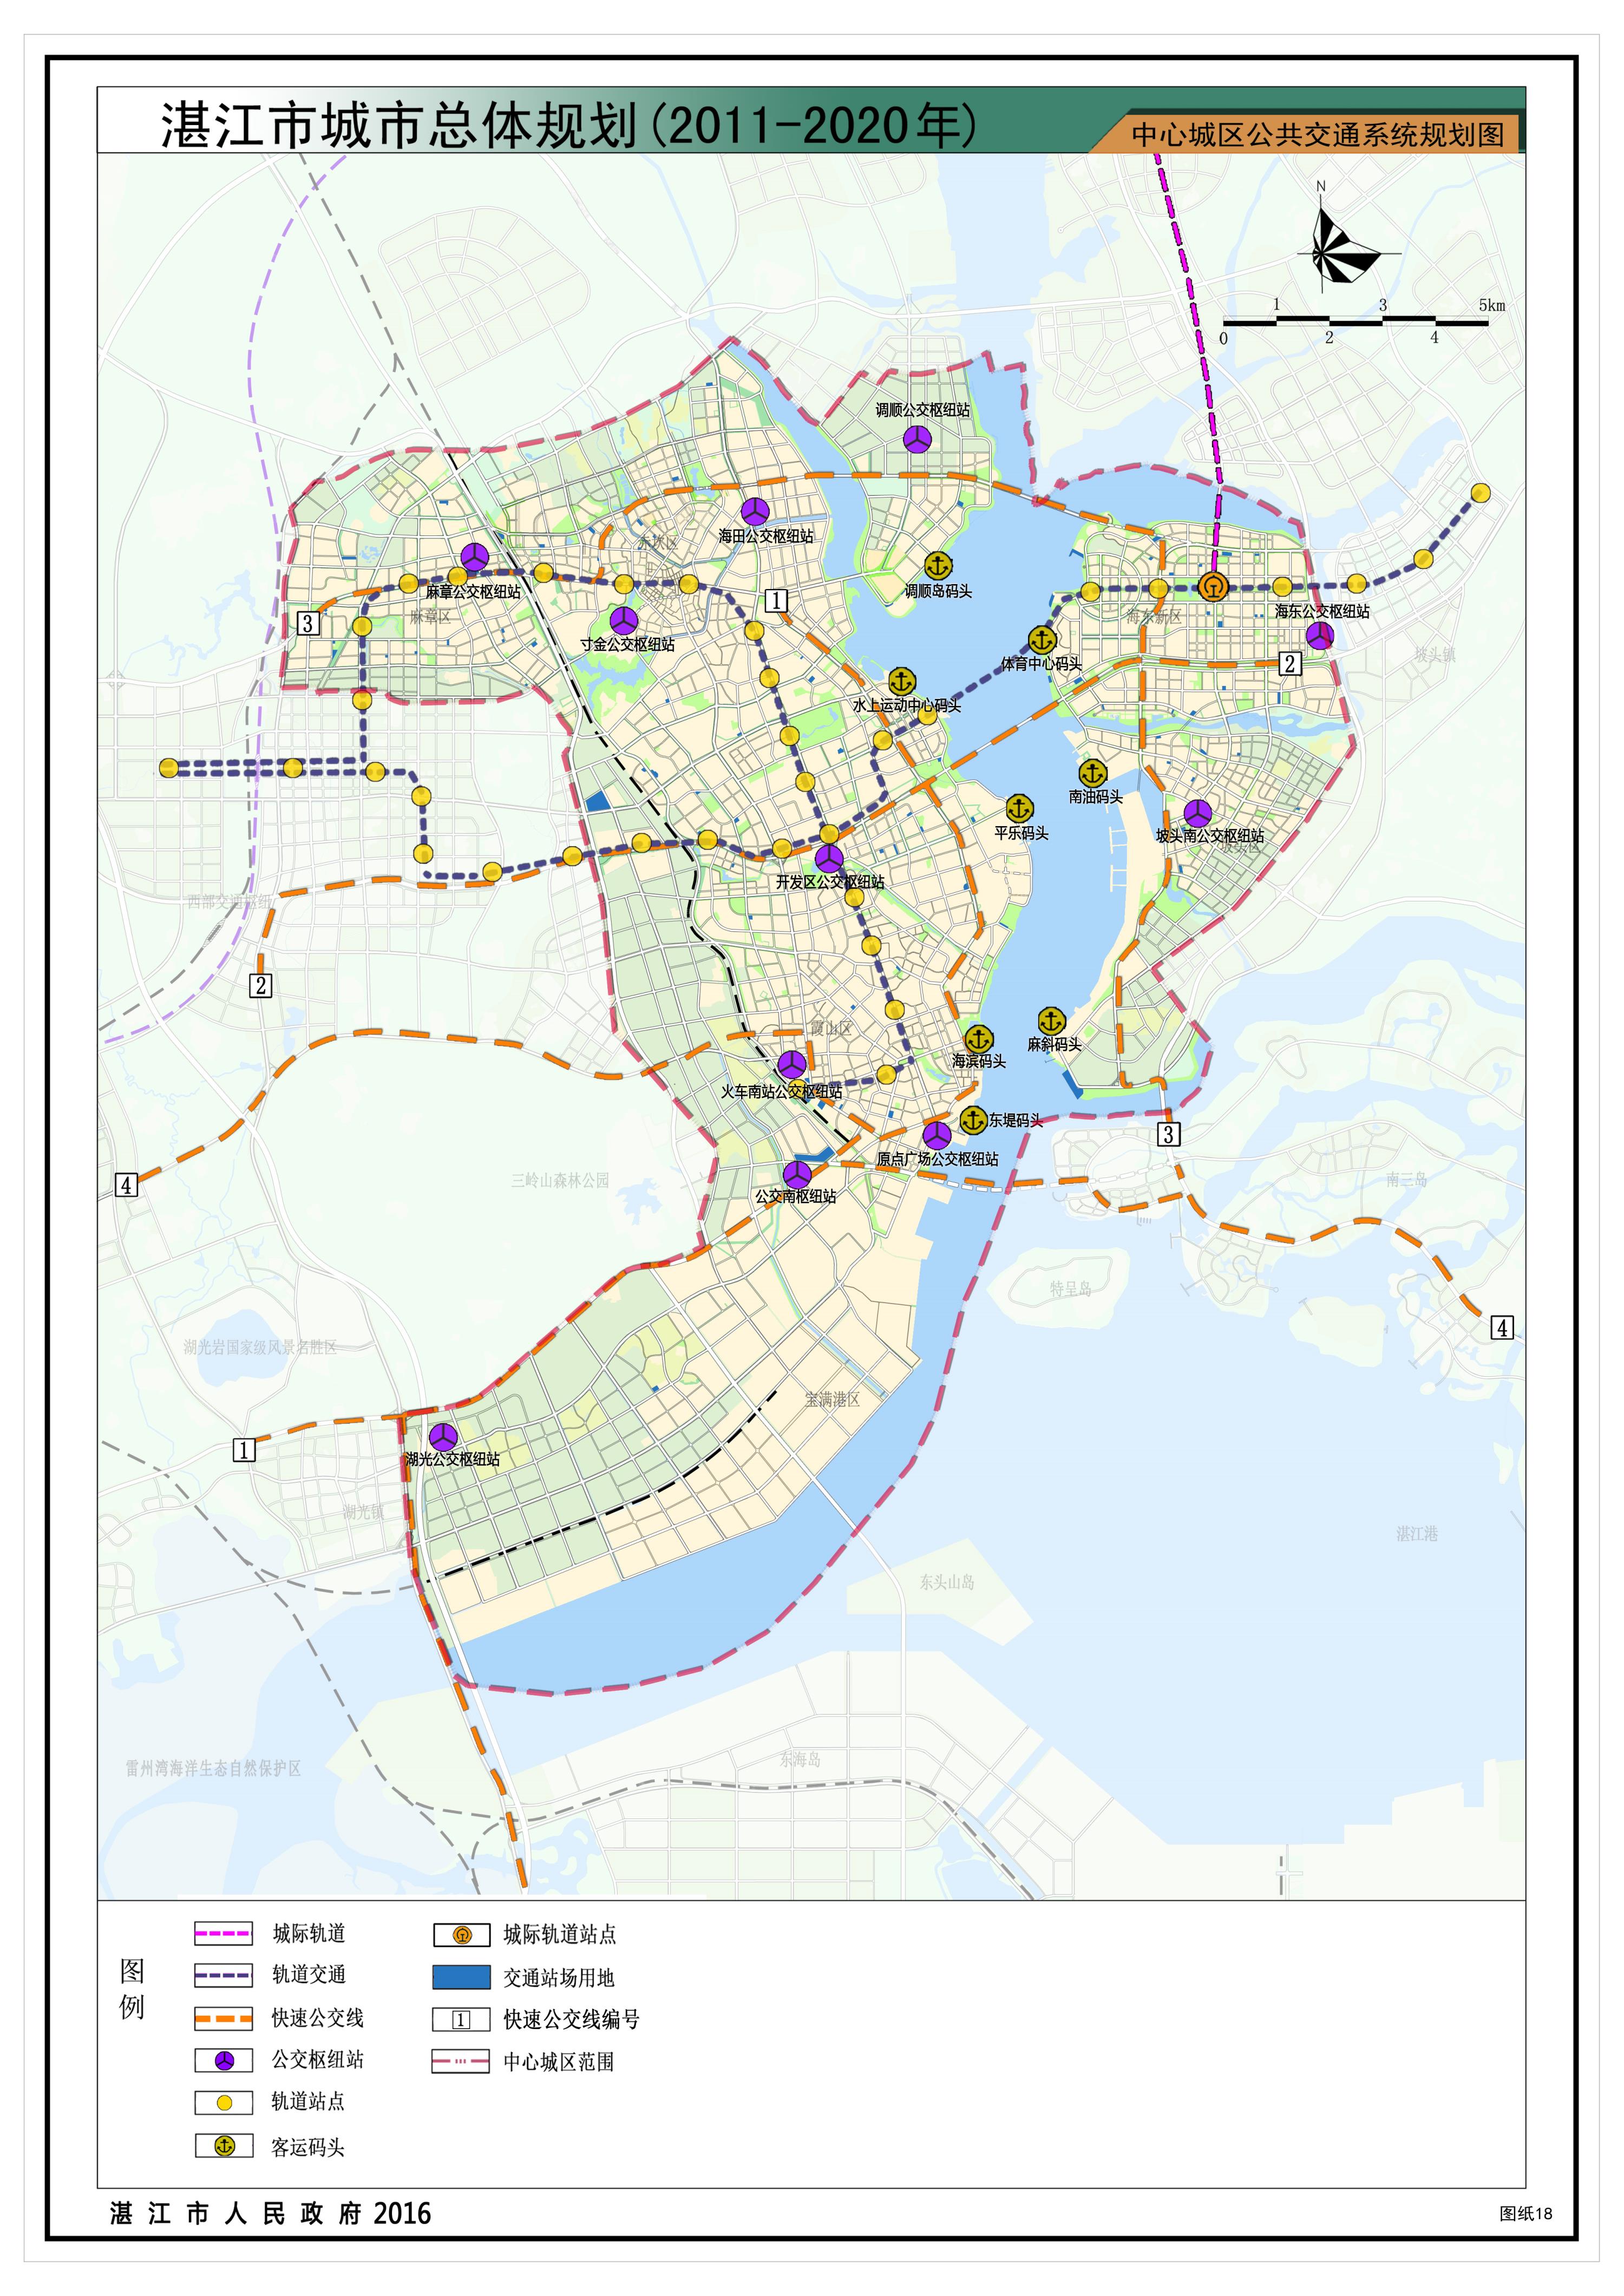 中心城区公共交通规划图8,市政基础设施以基础设施为先导,适度超前